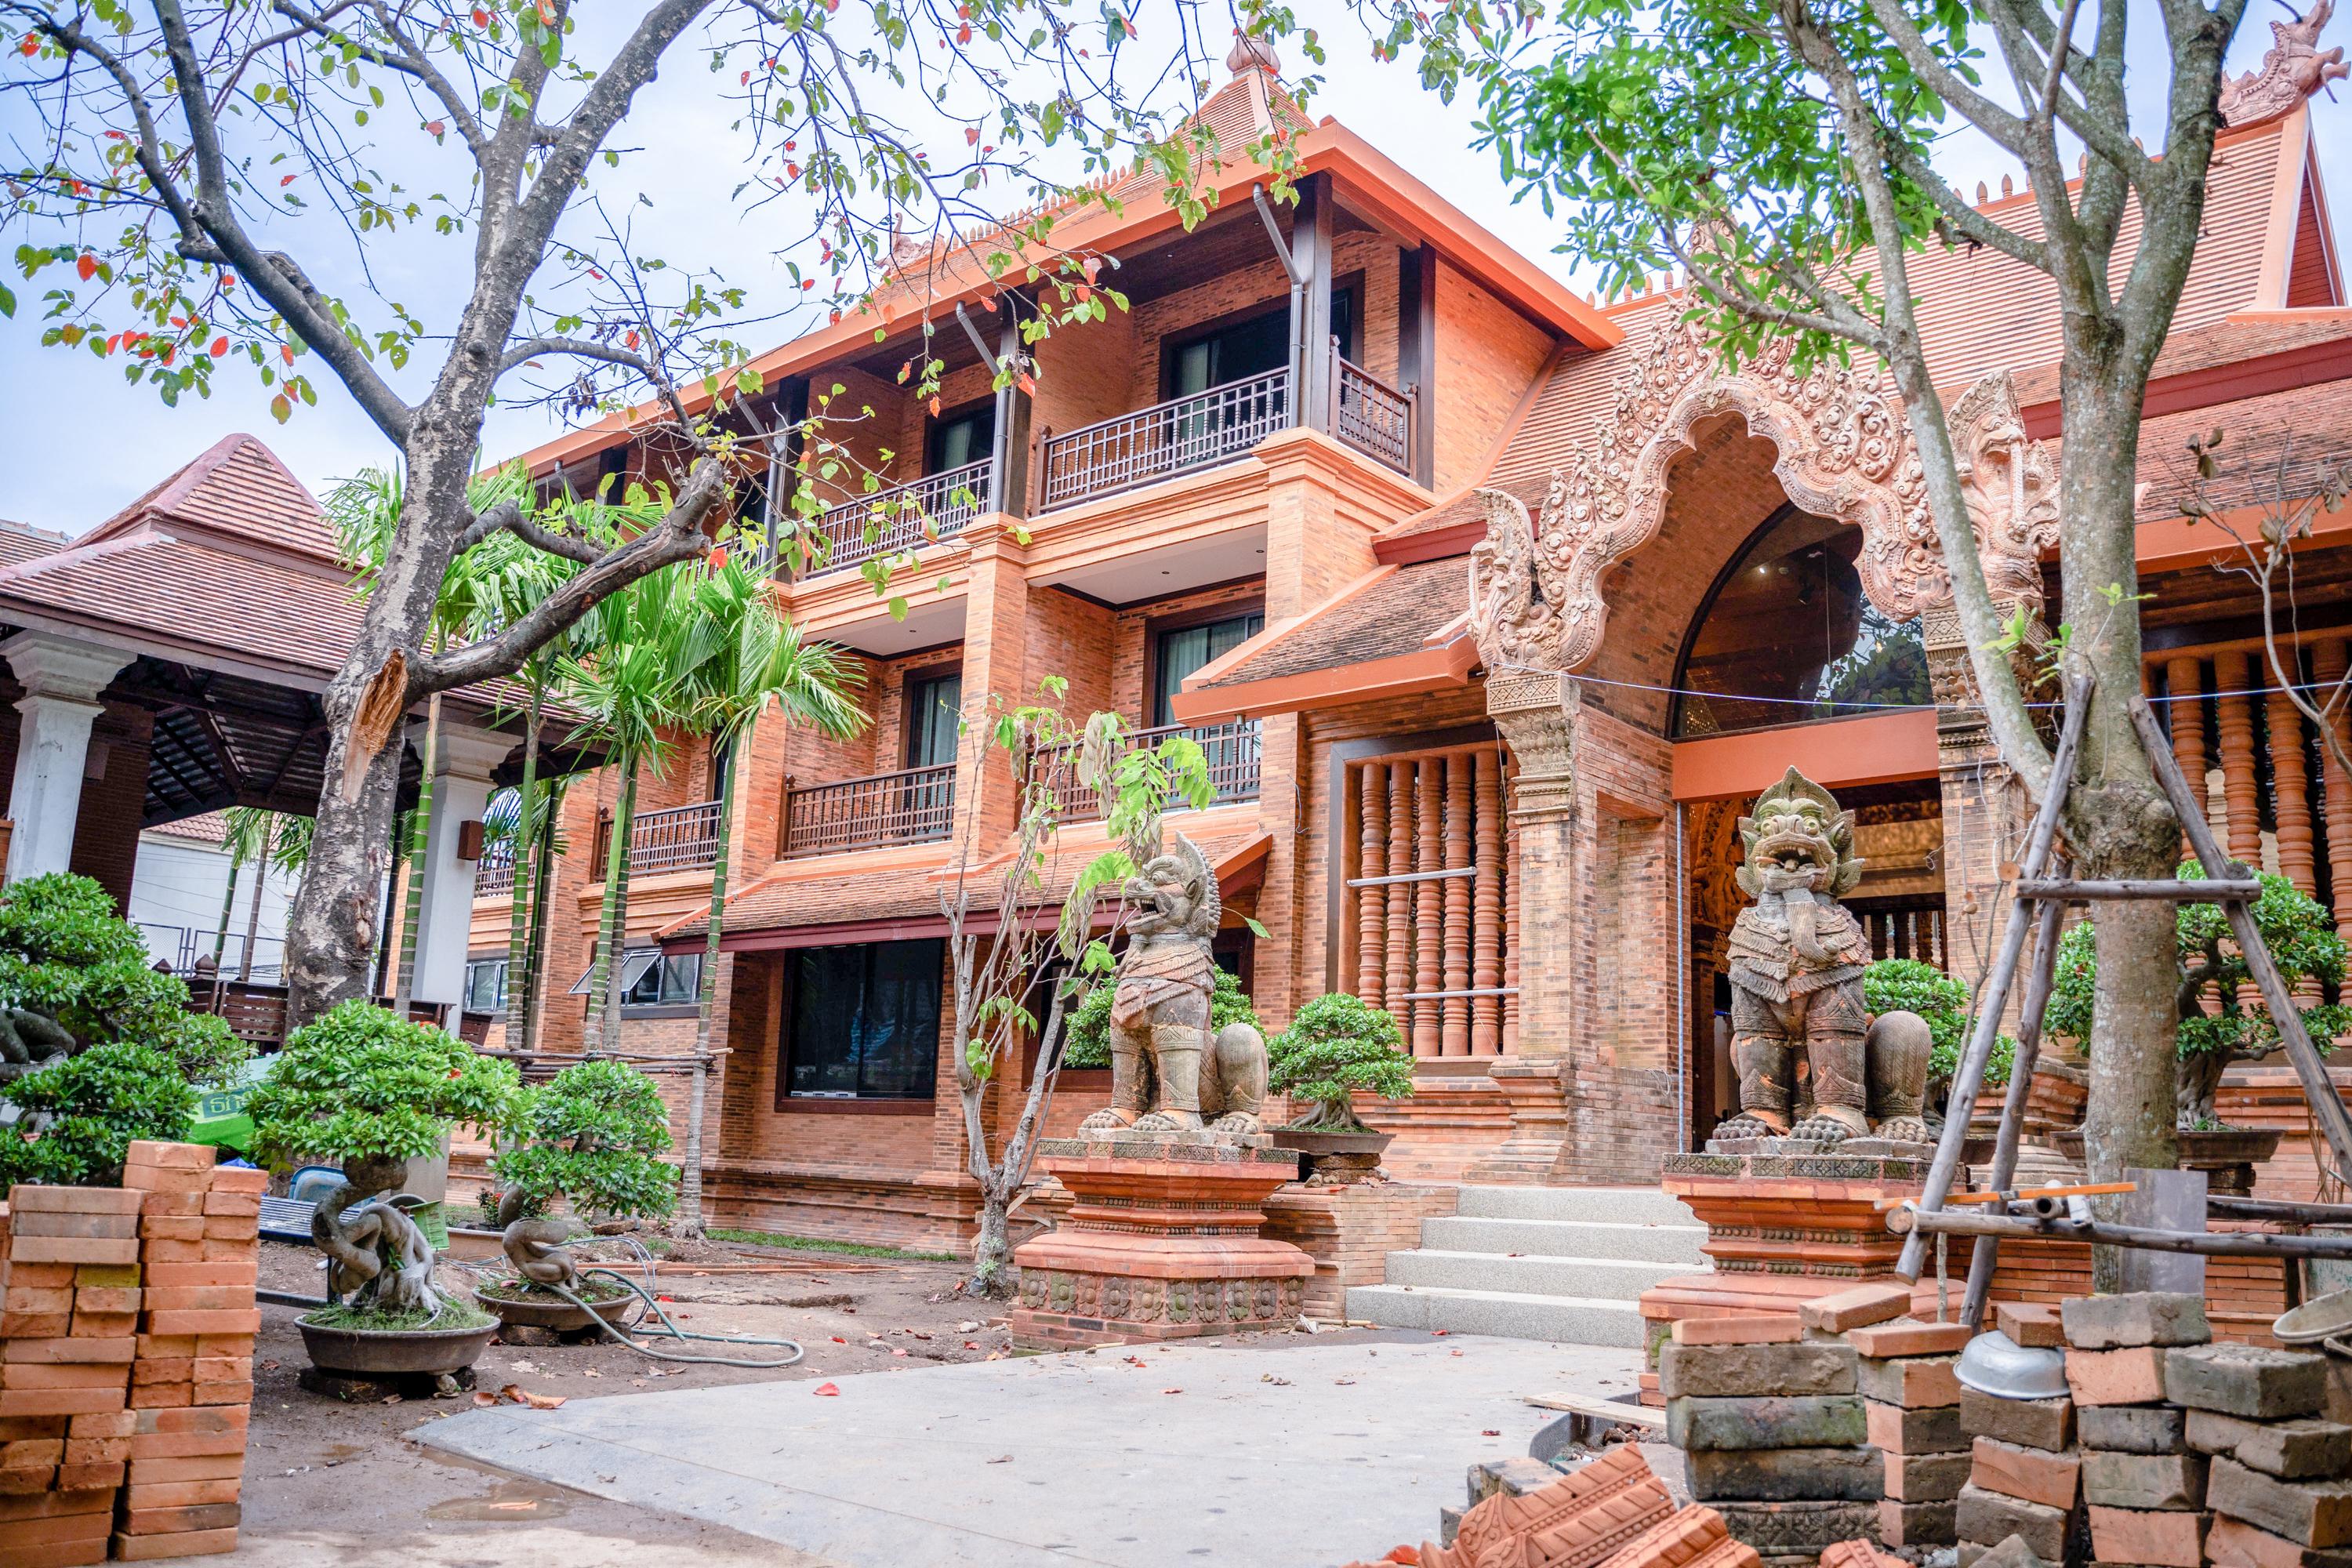 Phor Liang Meun Terracotta Arts - Sha Extra Plus Chiang Mai Exterior foto